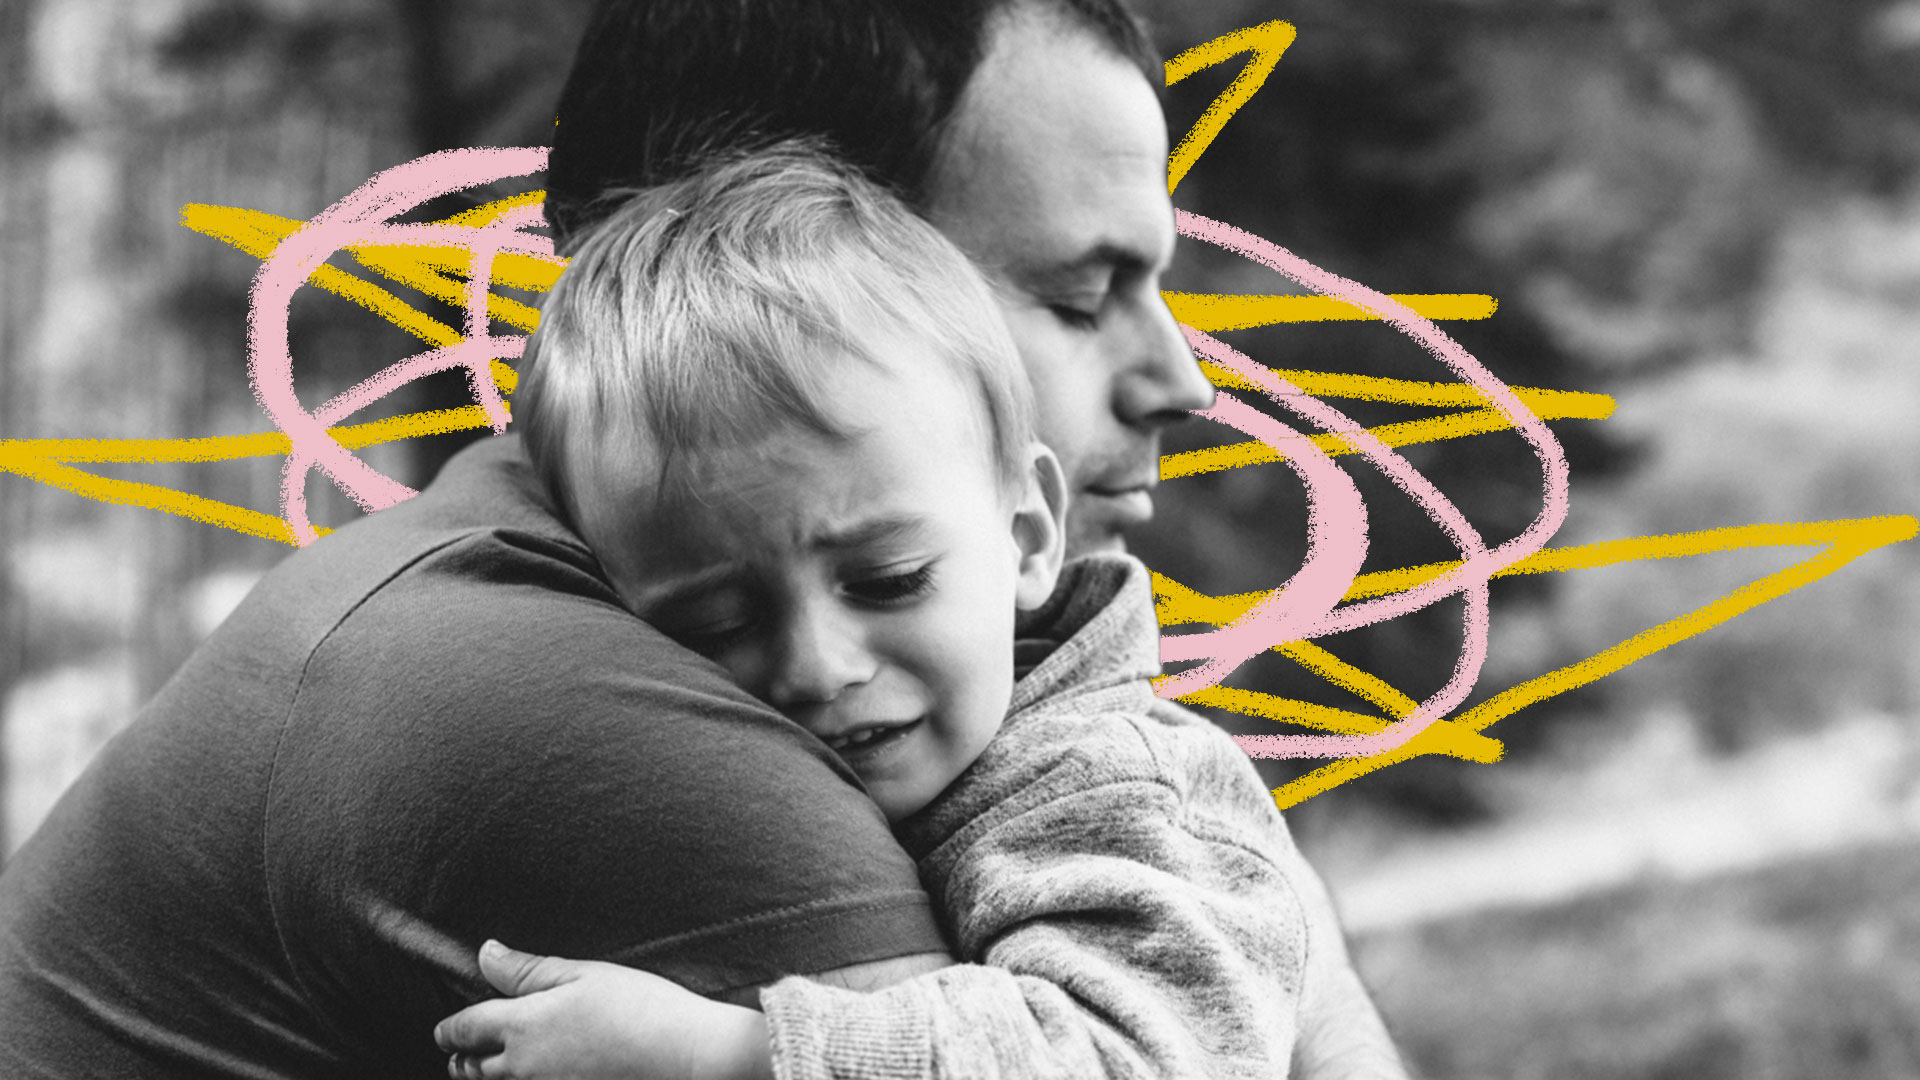 Homem adulto abraça criança chorando em foto preto e branca com grafismos amarelos e cor-de-rosa